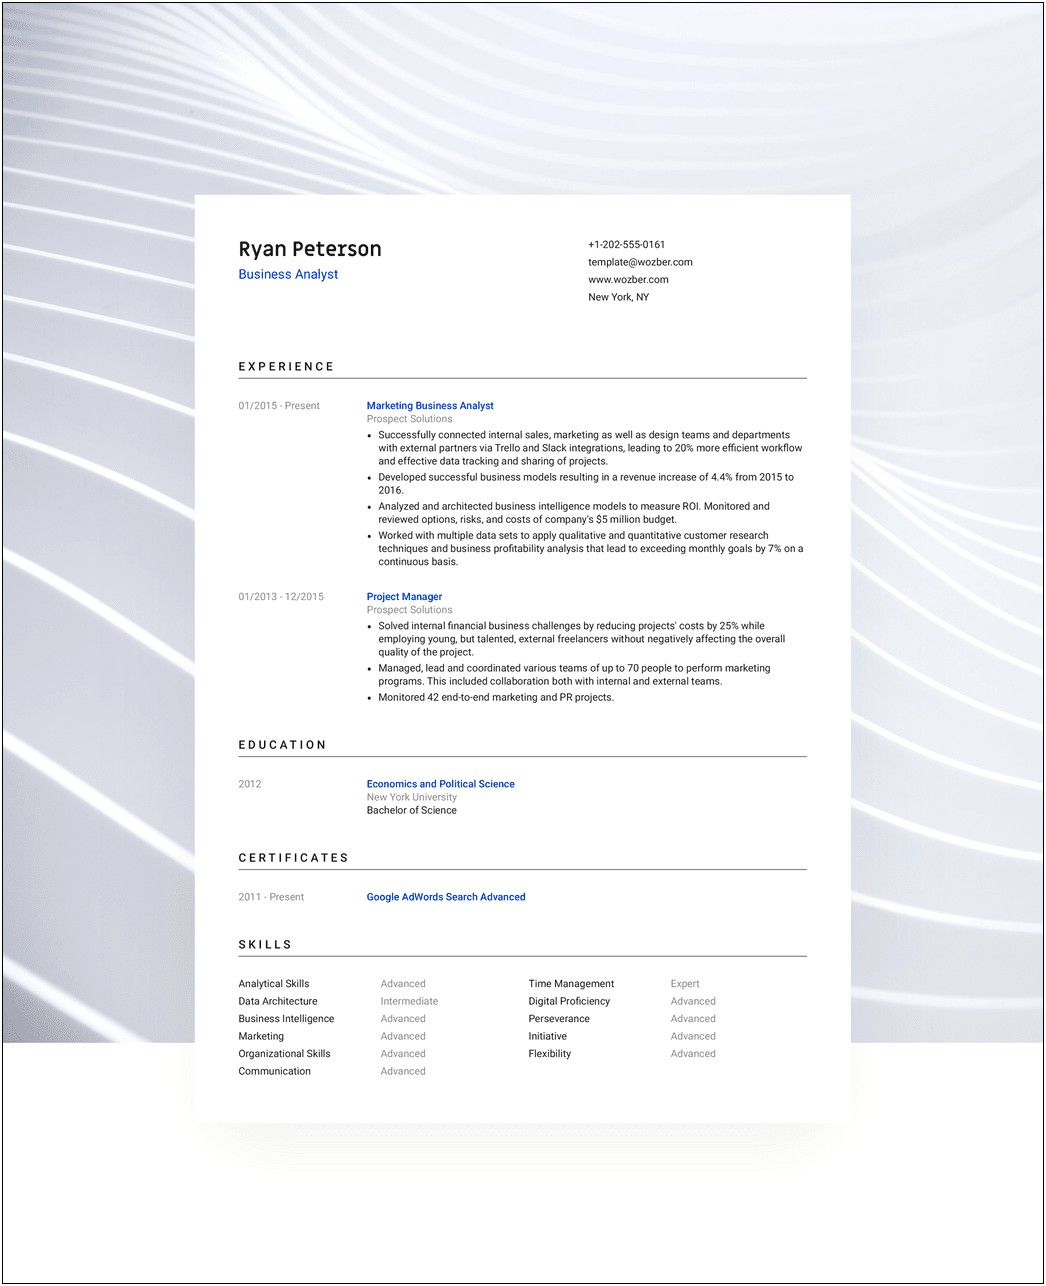 Resume Sample Pdf File Free Download